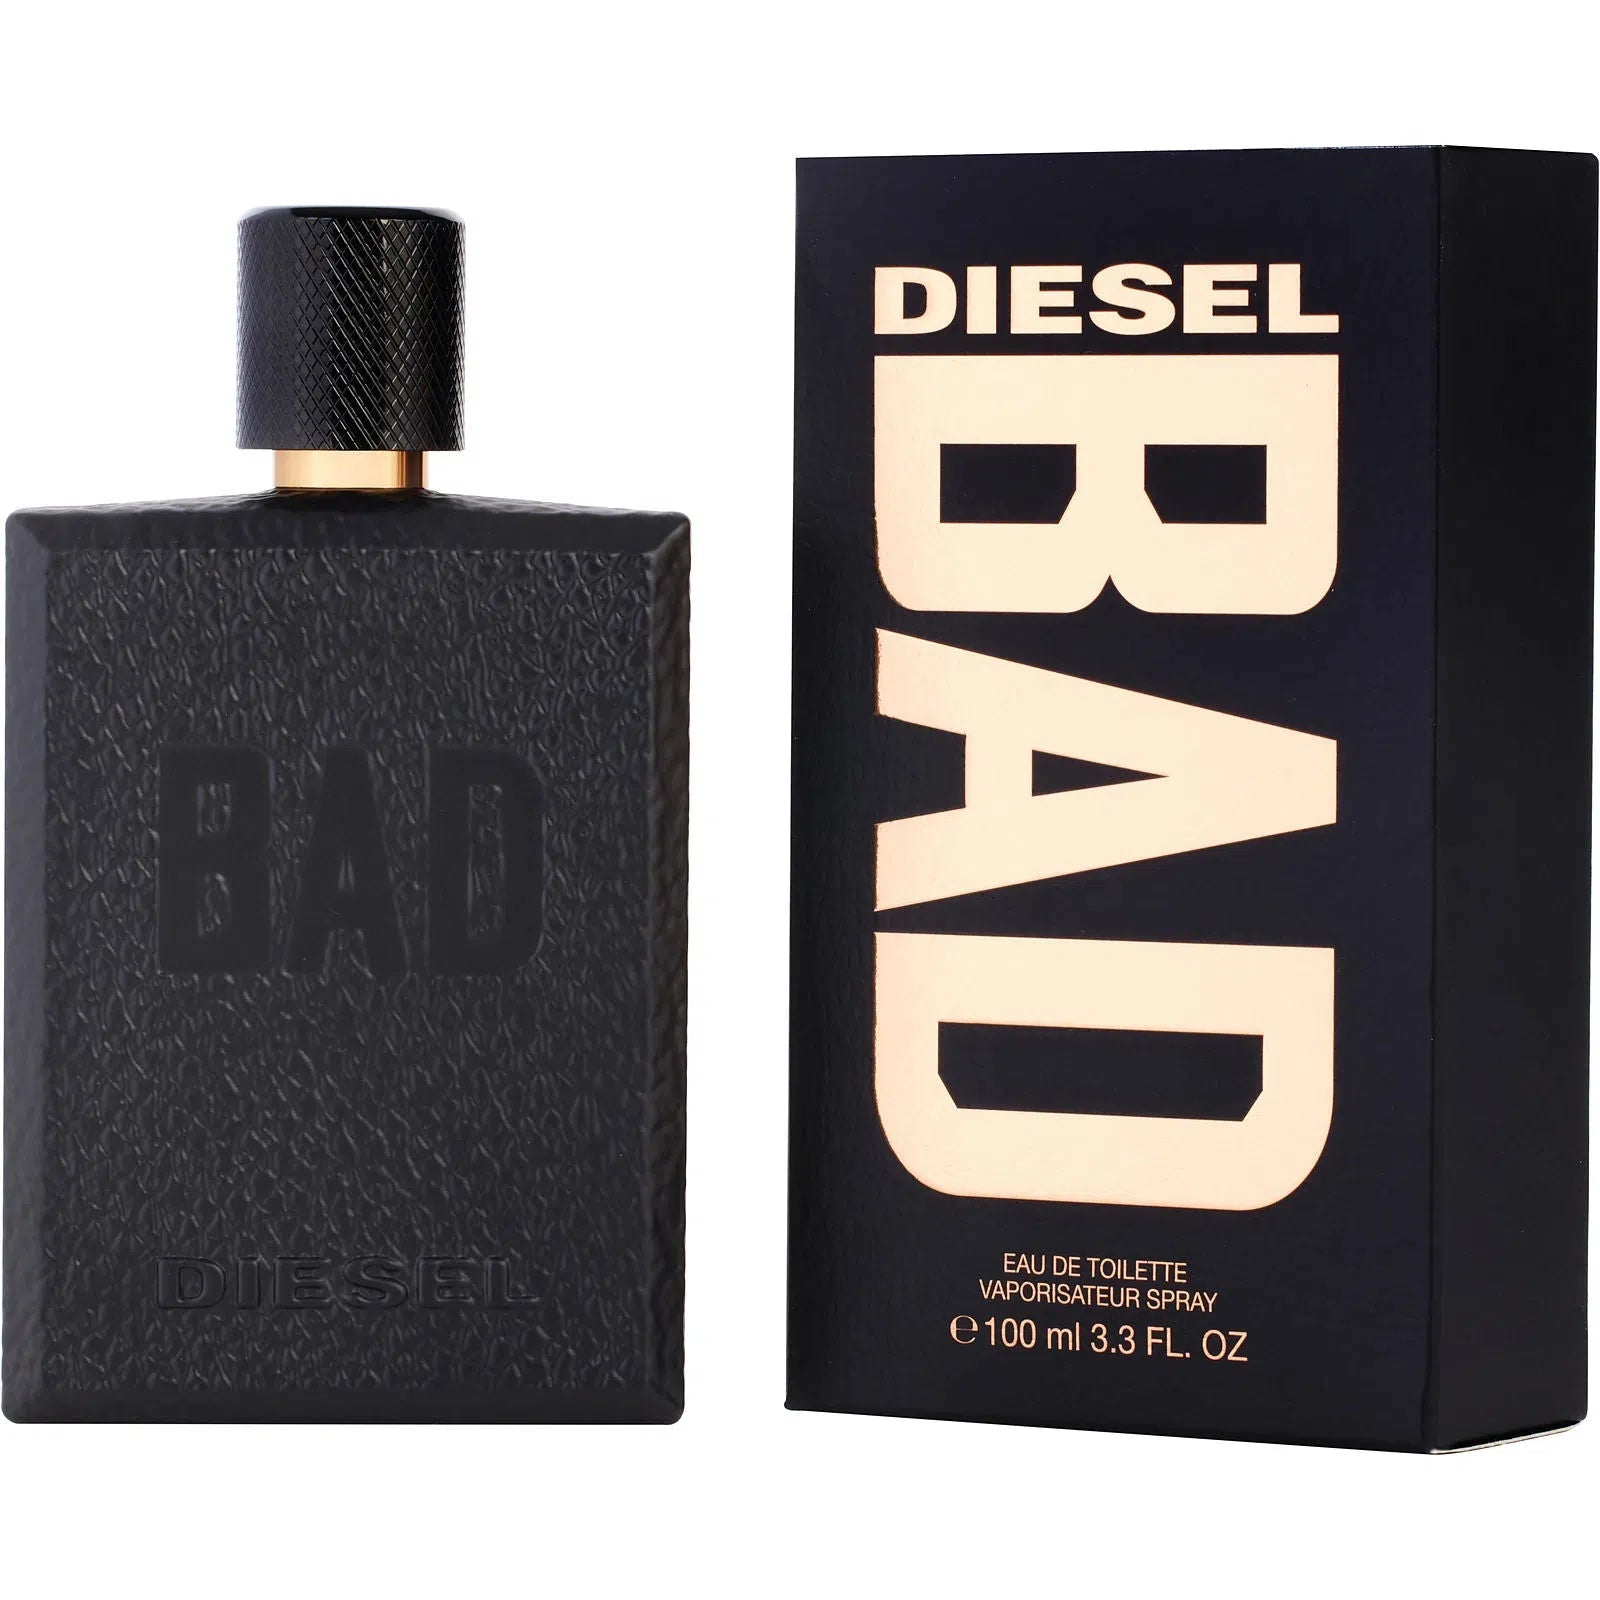 Perfume Diesel Bad EDT (M) / 100 ml - 3614273356053- Prive Perfumes Honduras